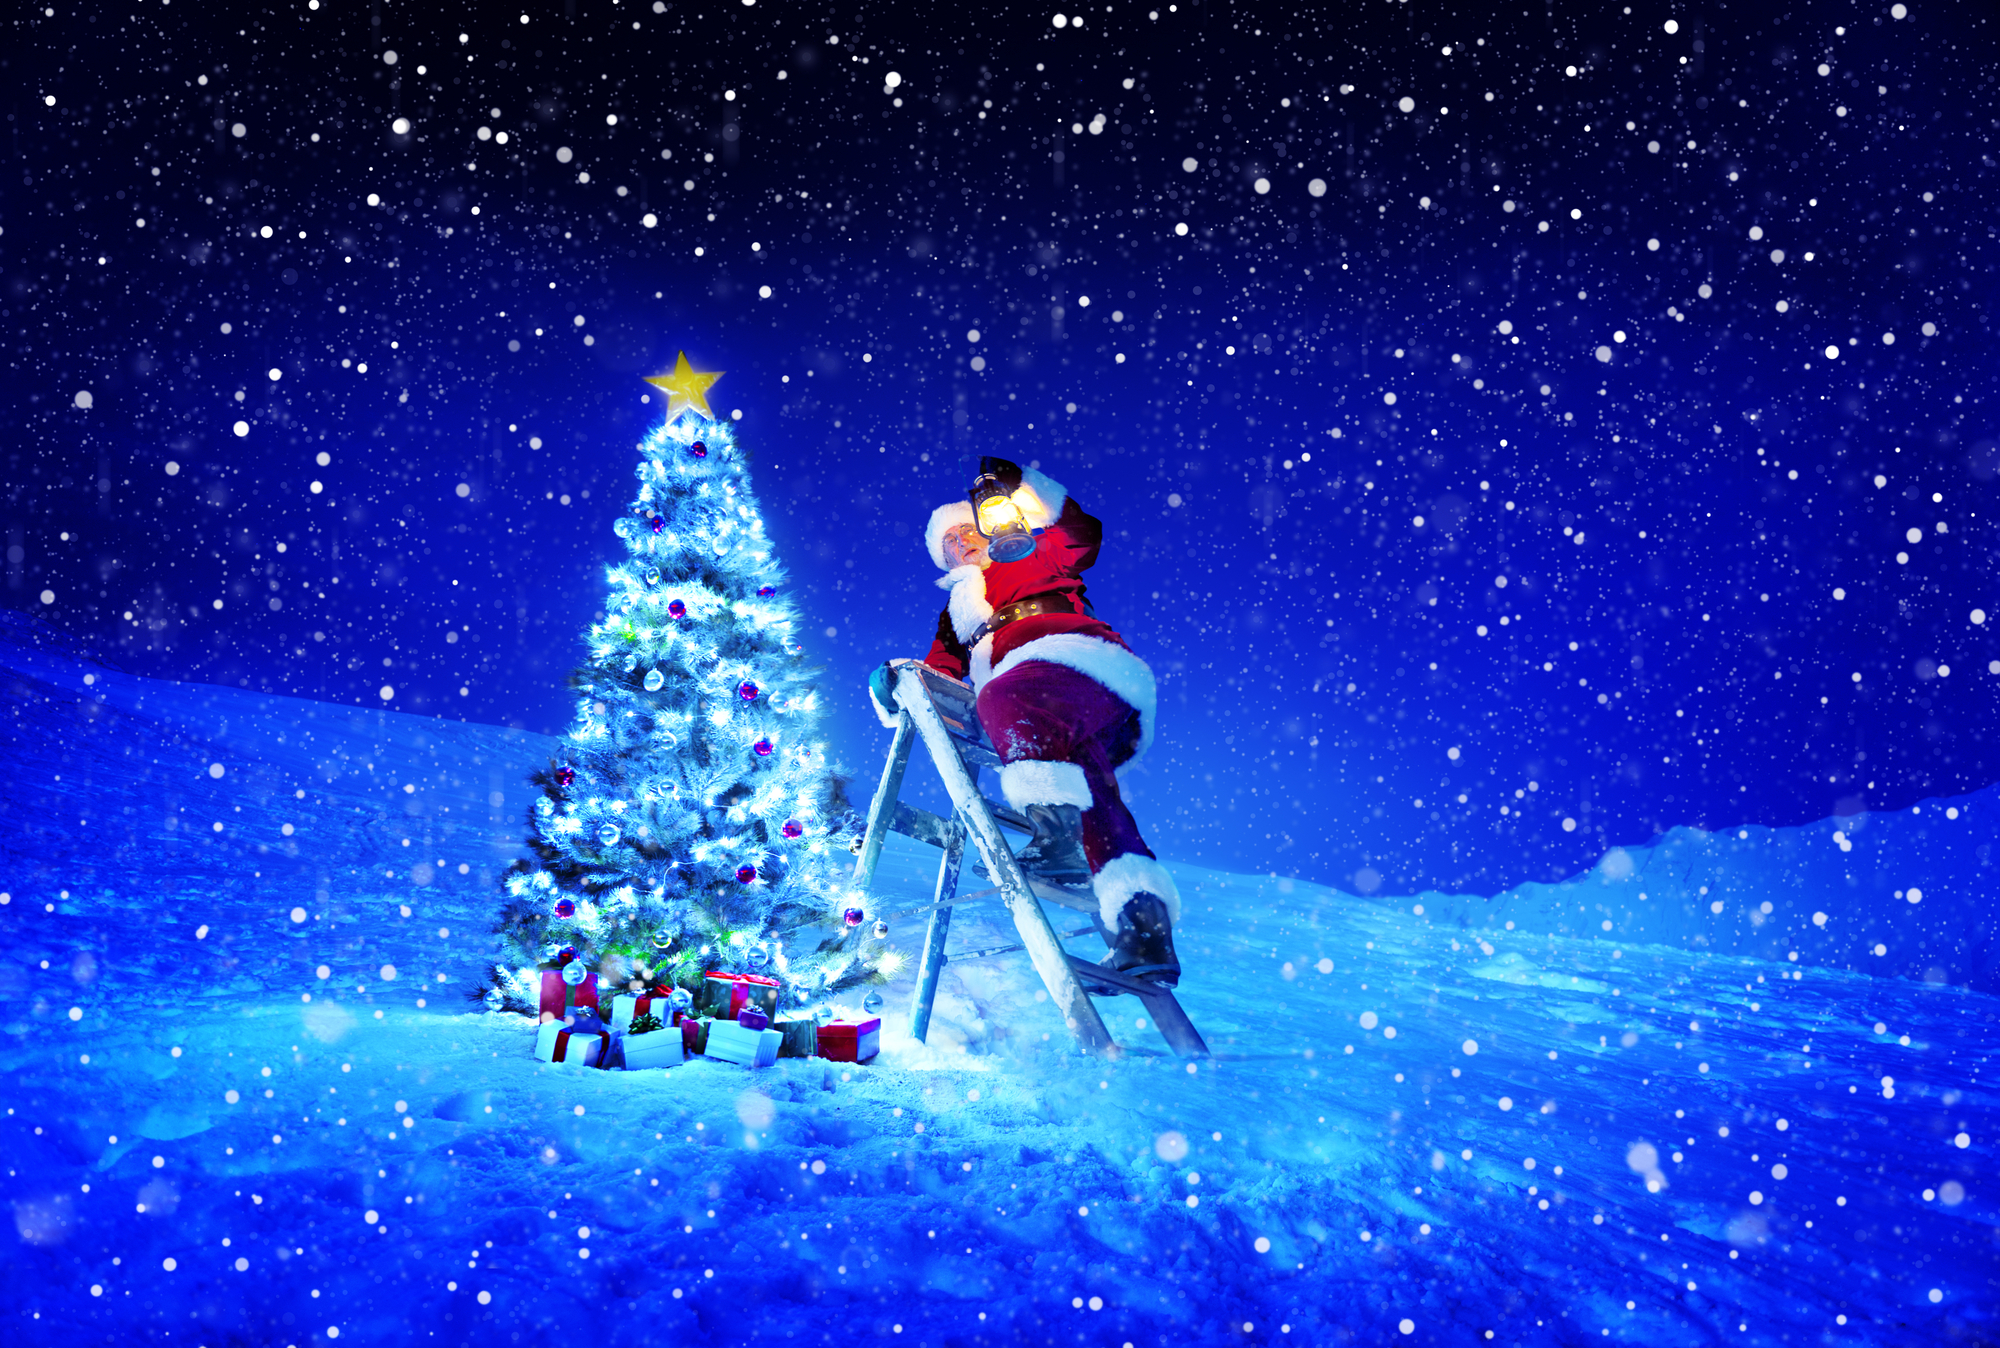 Santa Claus skiing near a Christmas tree at 34 Market Place.